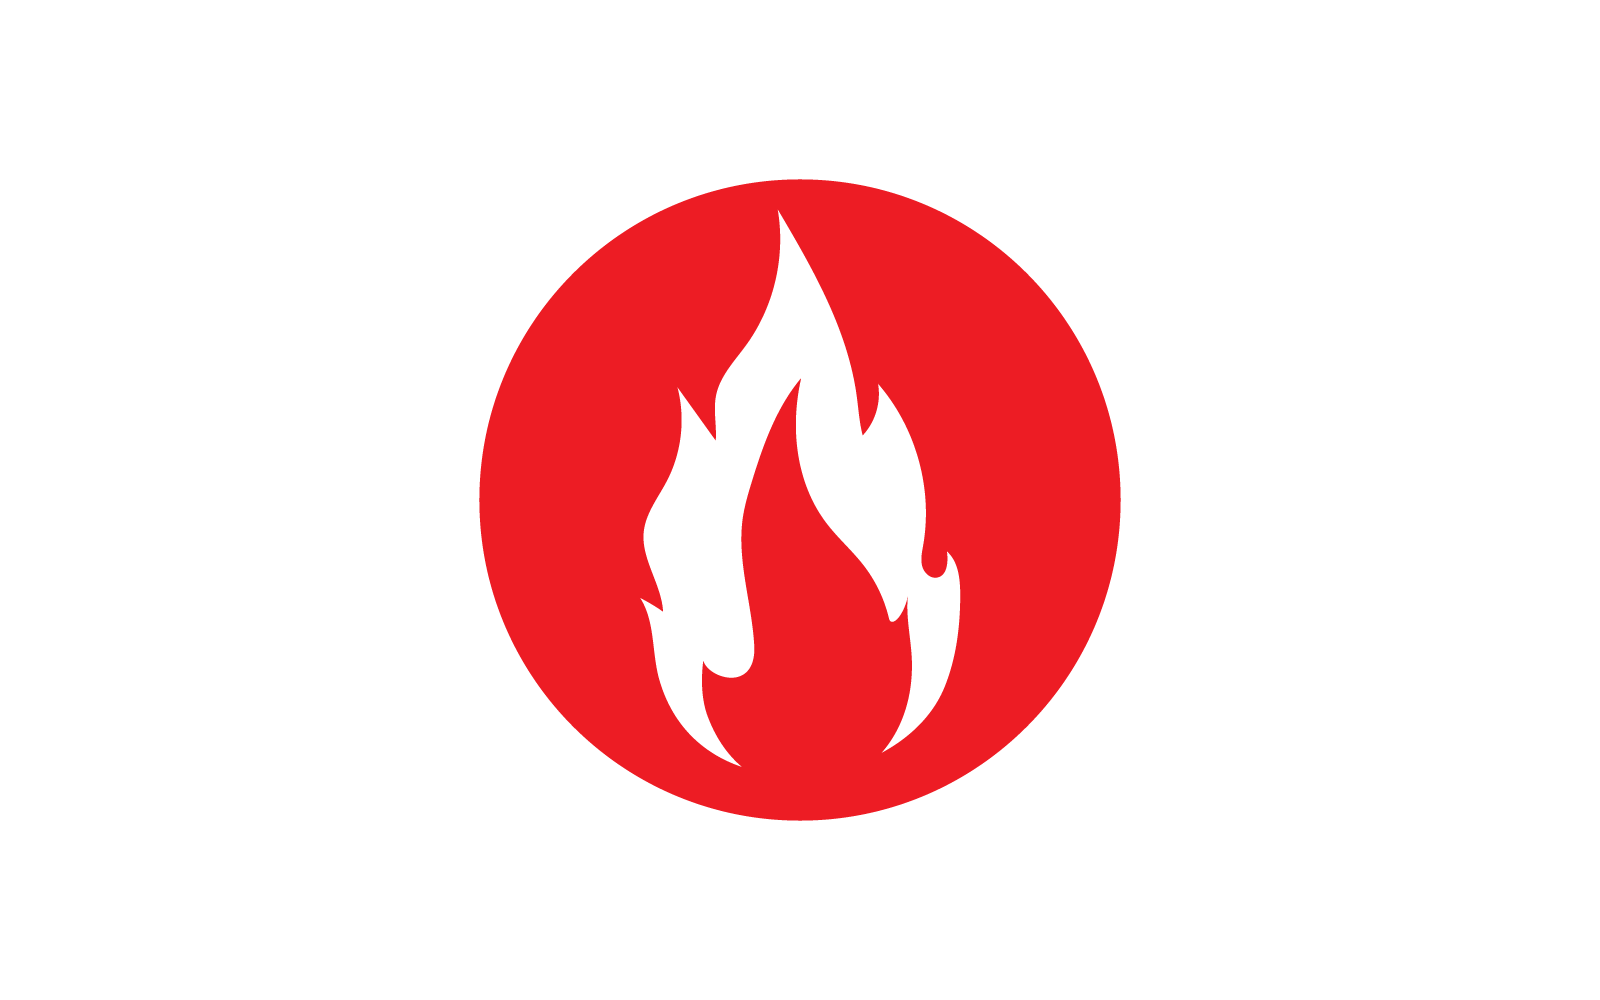 Ateş alevi, Petrol, gaz ve enerji logosu düz tasarım logo konsepti